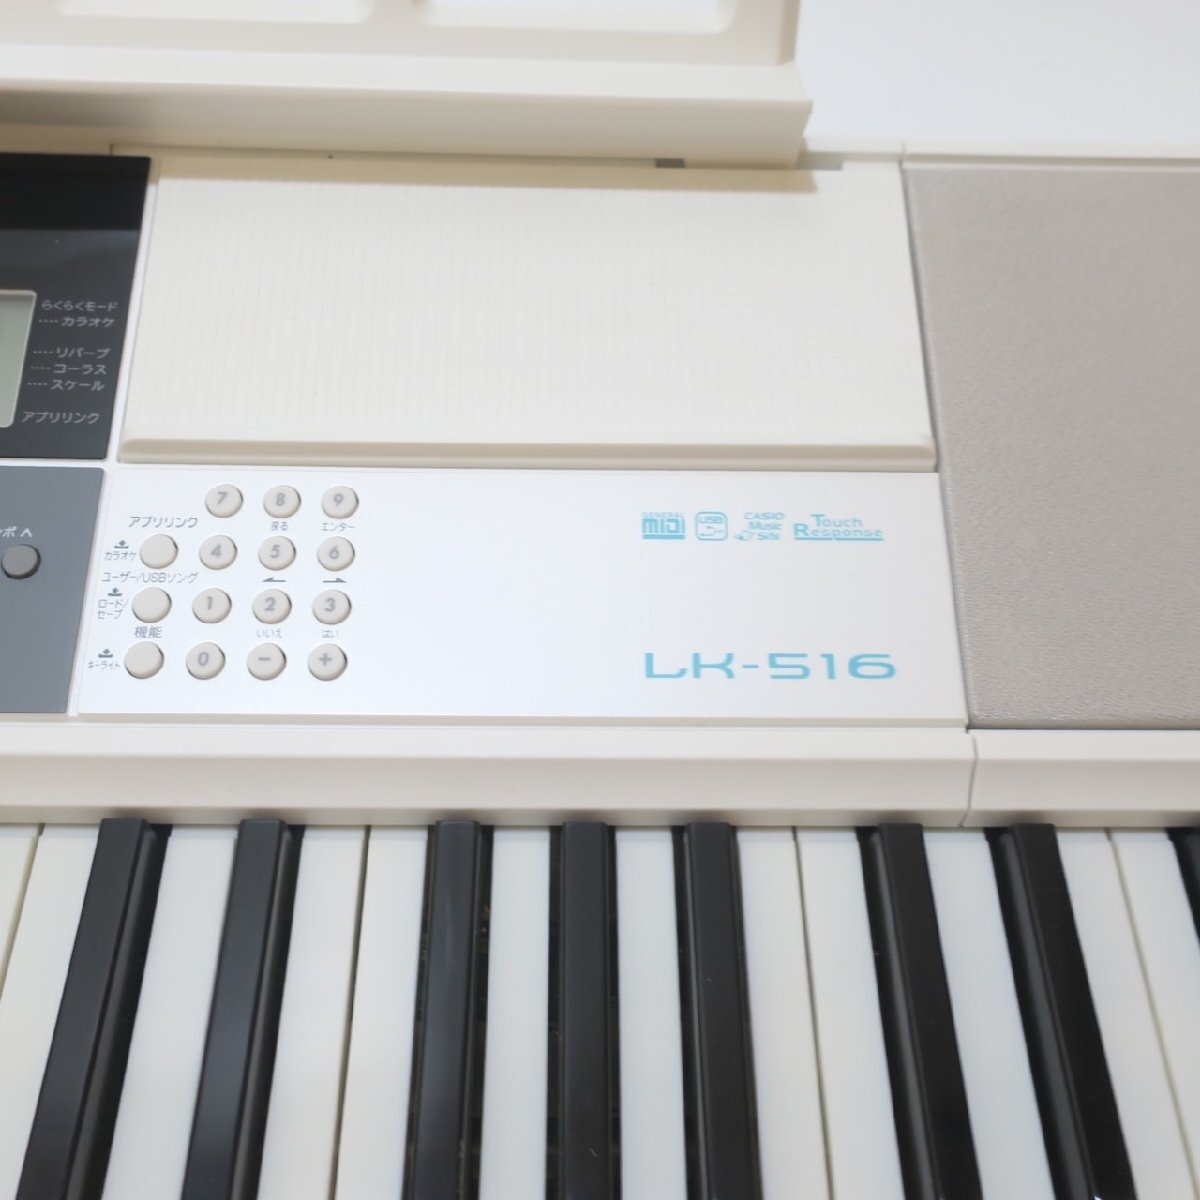 １円スタート CASIO カシオ LK-516 電子ピアノ キーボード 鍵盤楽器 ヘッドホン マイク 取扱説明書 保証書 白 ホワイト 通電確認済み_画像6